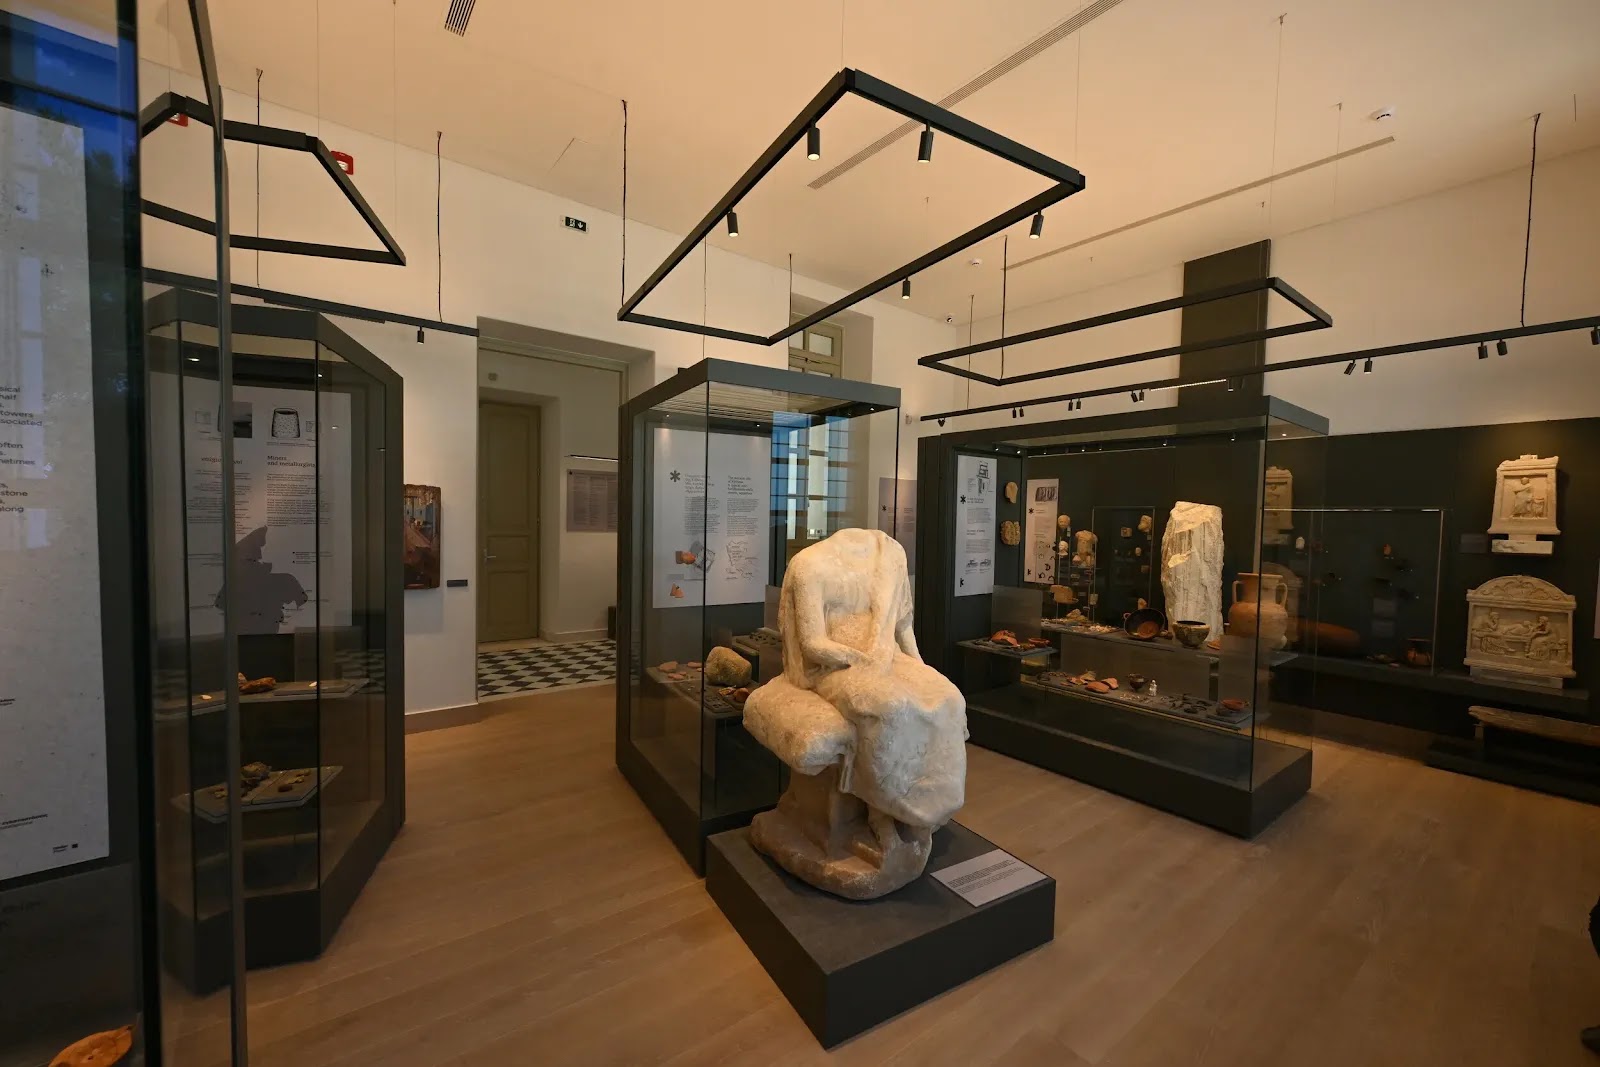 Επιτύμβια ανάγλυφα, γλυπτά, αρχιτεκτονικά μέλη, επιγραφές, ενσφράγιστες λαβές εμπορικών αμφορέων είναι μόνο μερικά από τα σπουδαία ευρήματα που φιλοξενούνται πλέον στο νέο Αρχαιολογικό Μουσείο Κύθνου.